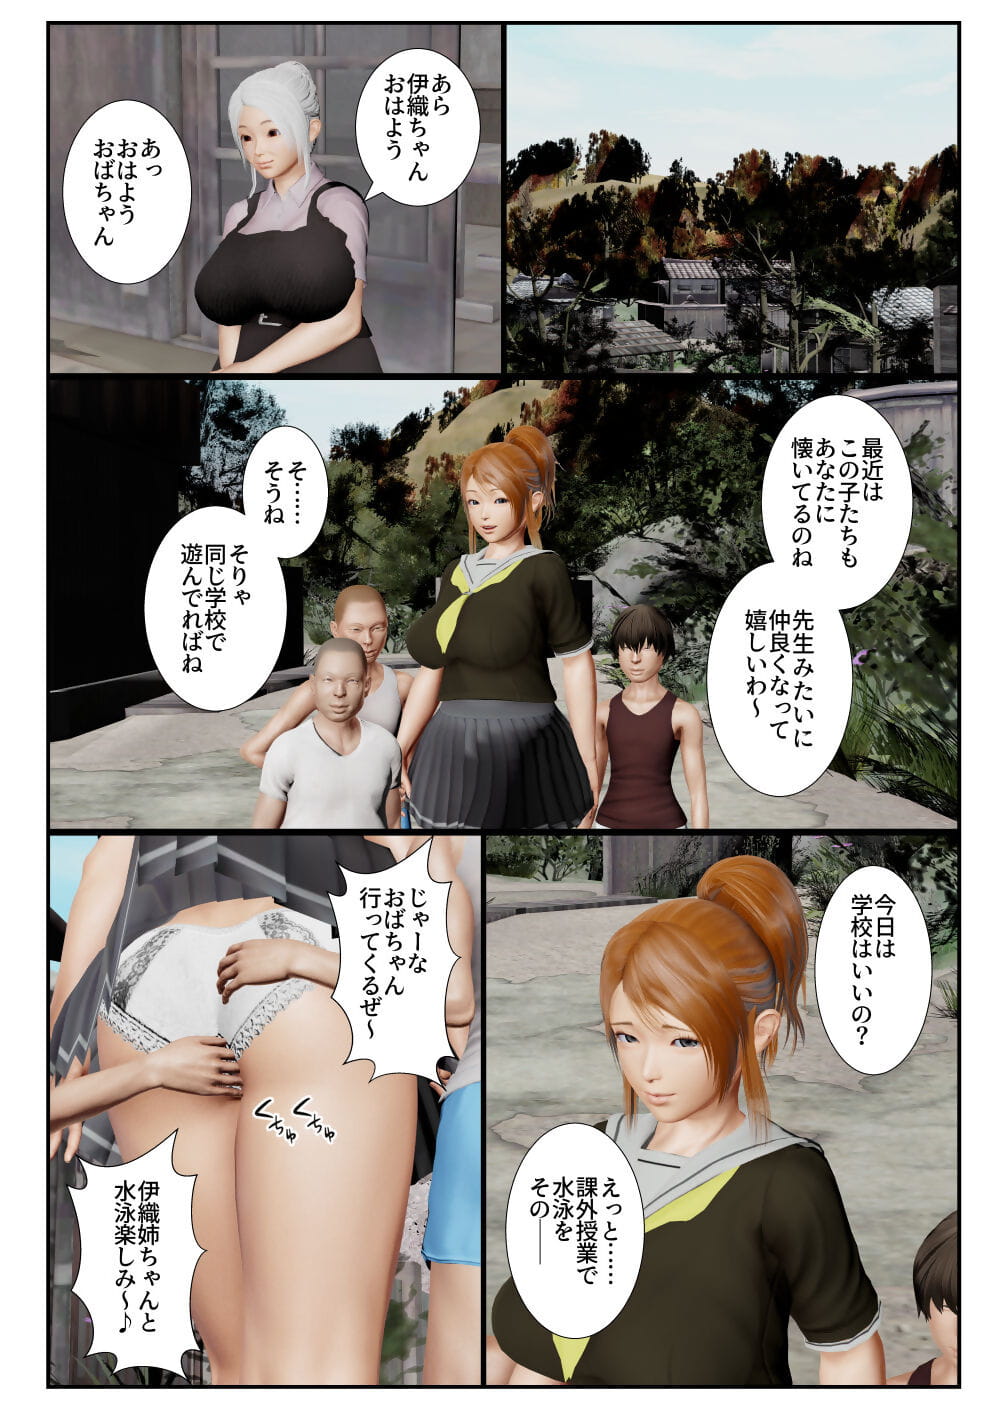 Goriramu Touma kenshi shiriizu Demon Swordsman Series - part 5 page 1